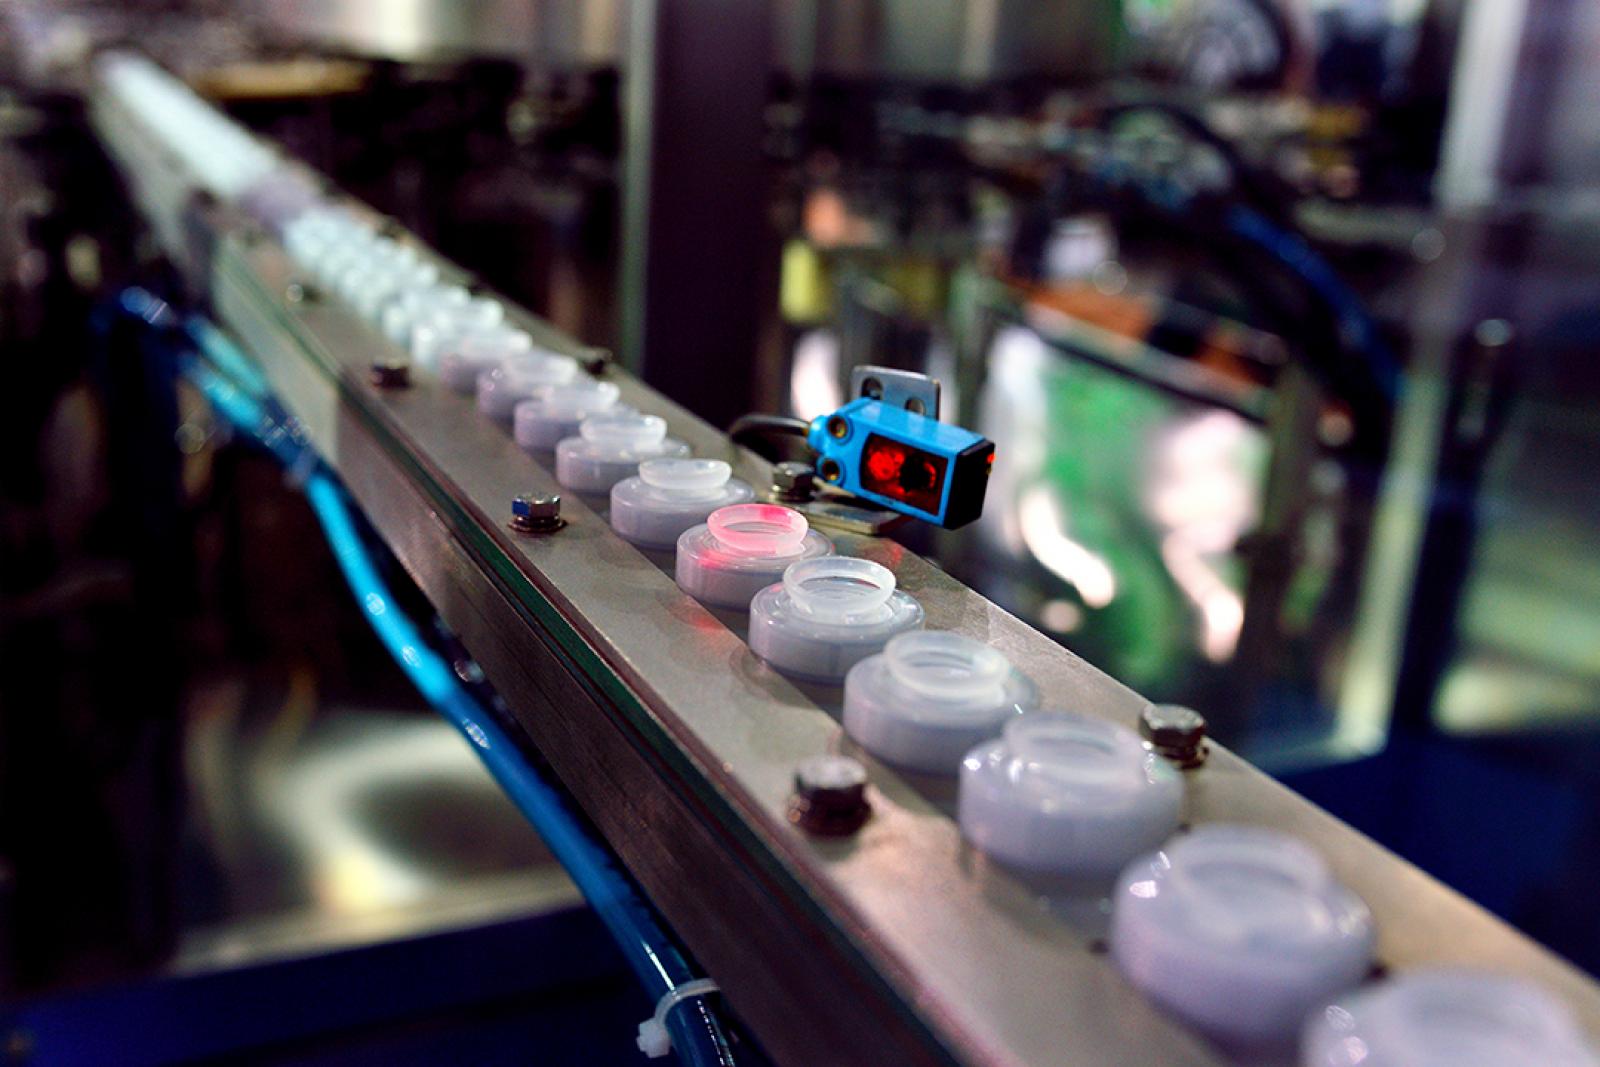 Laser scannt Objekte auf einem Förderband in einer Produktion